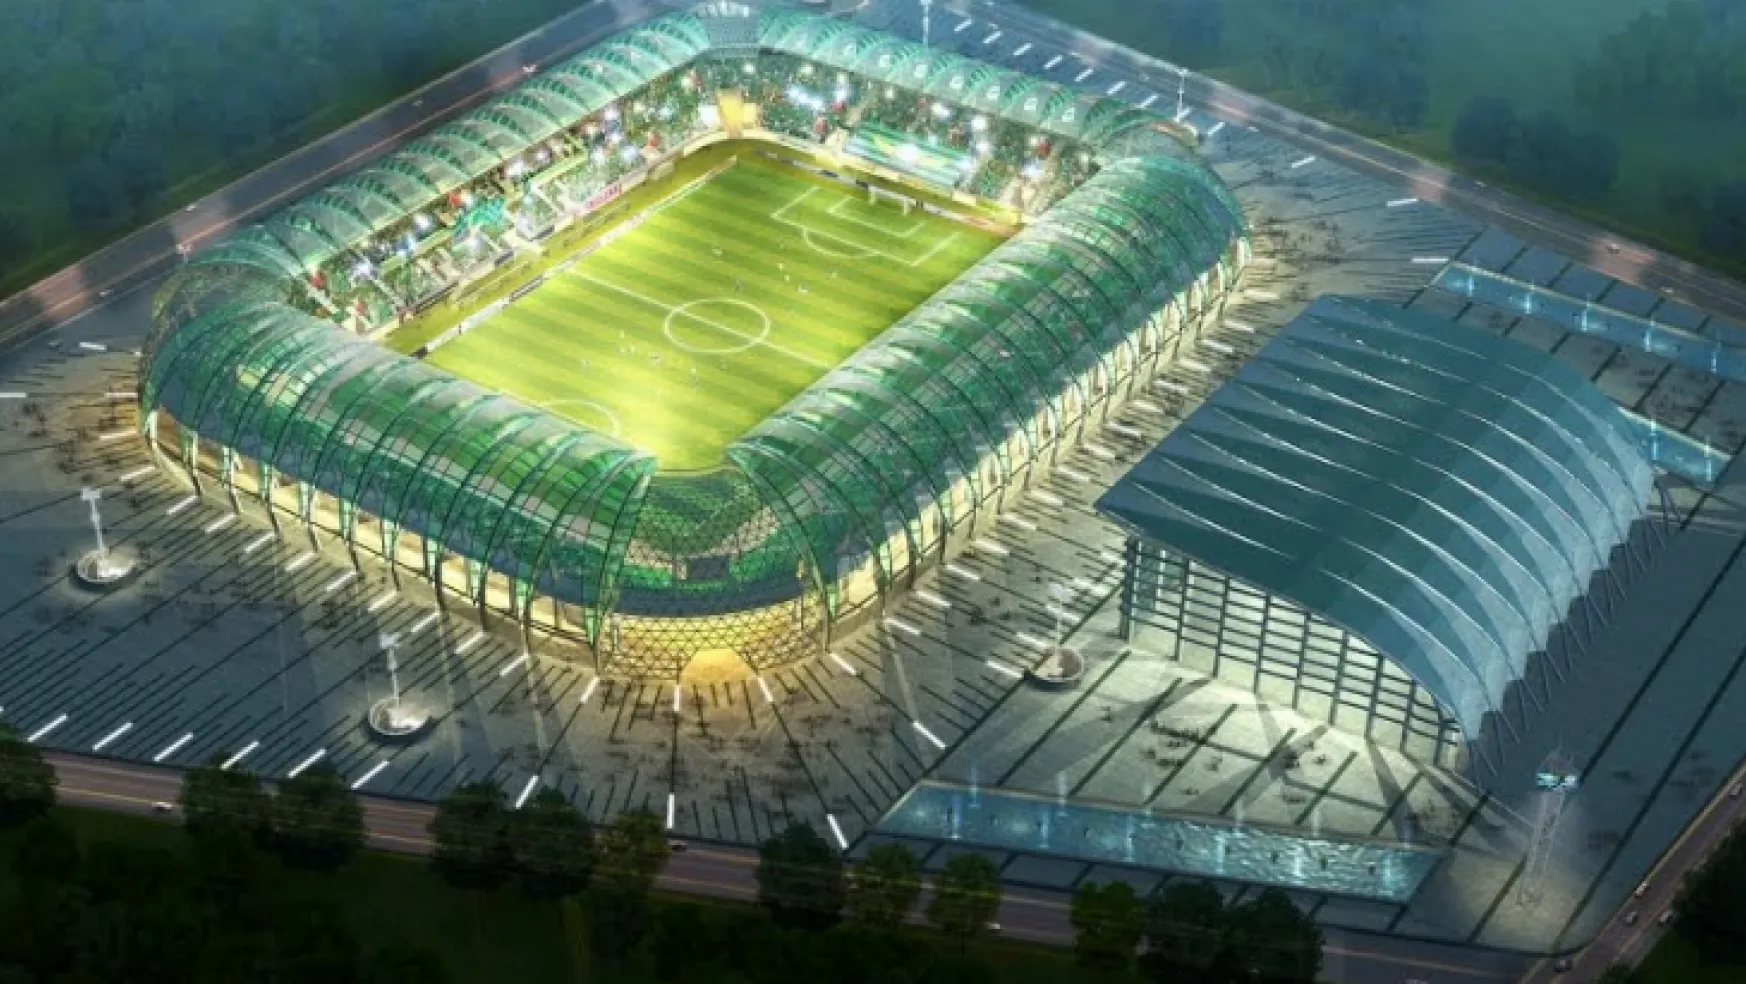 Spor Toto Akhisar Stadyumunda yer teslimi yapıldı